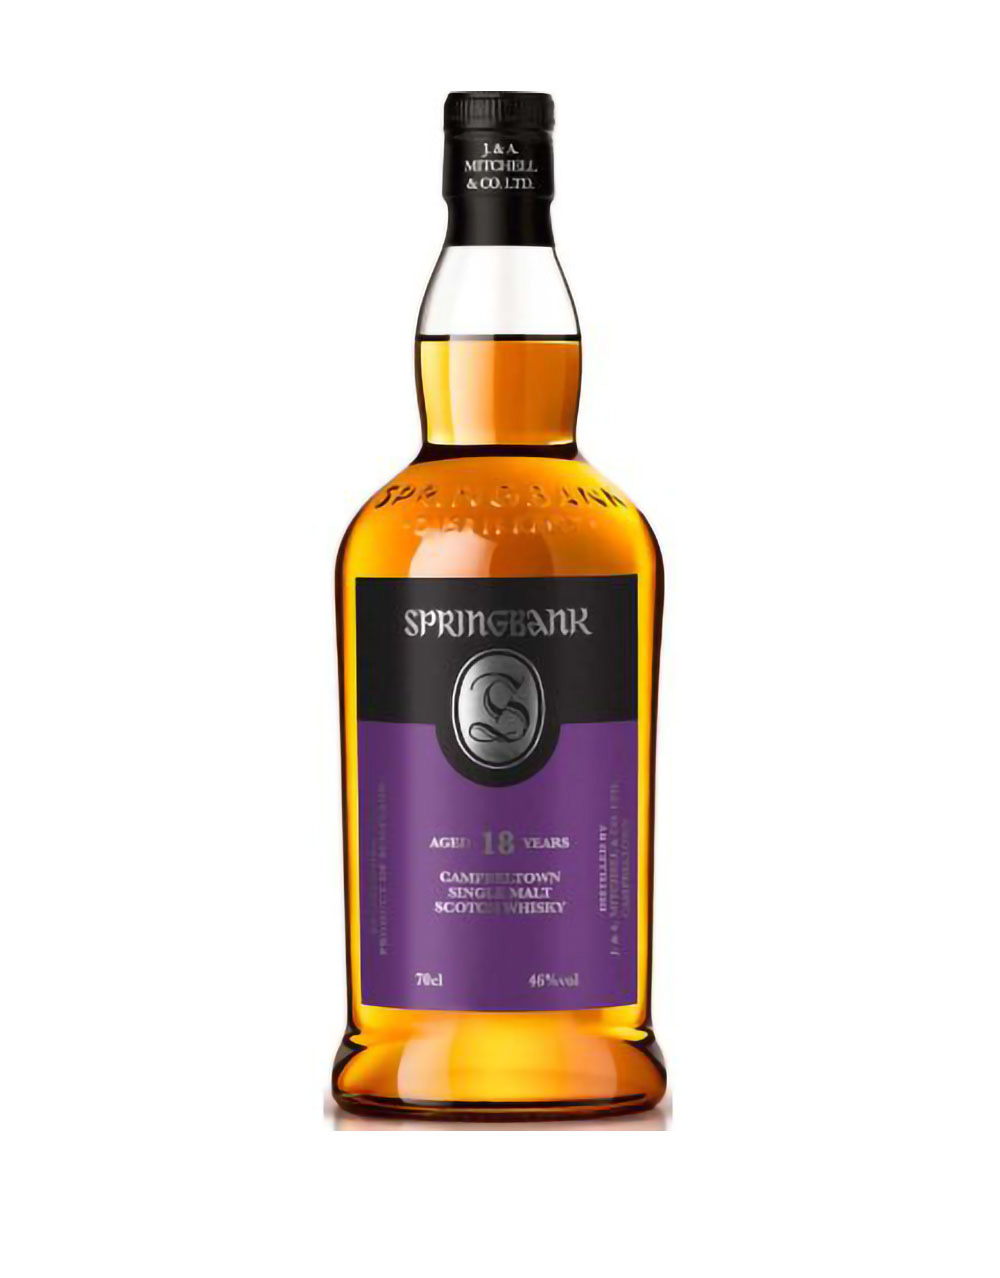 Braes of Glenlivet 30 Year Old Single Malt Scotch Whisky (Signatory Bottling)